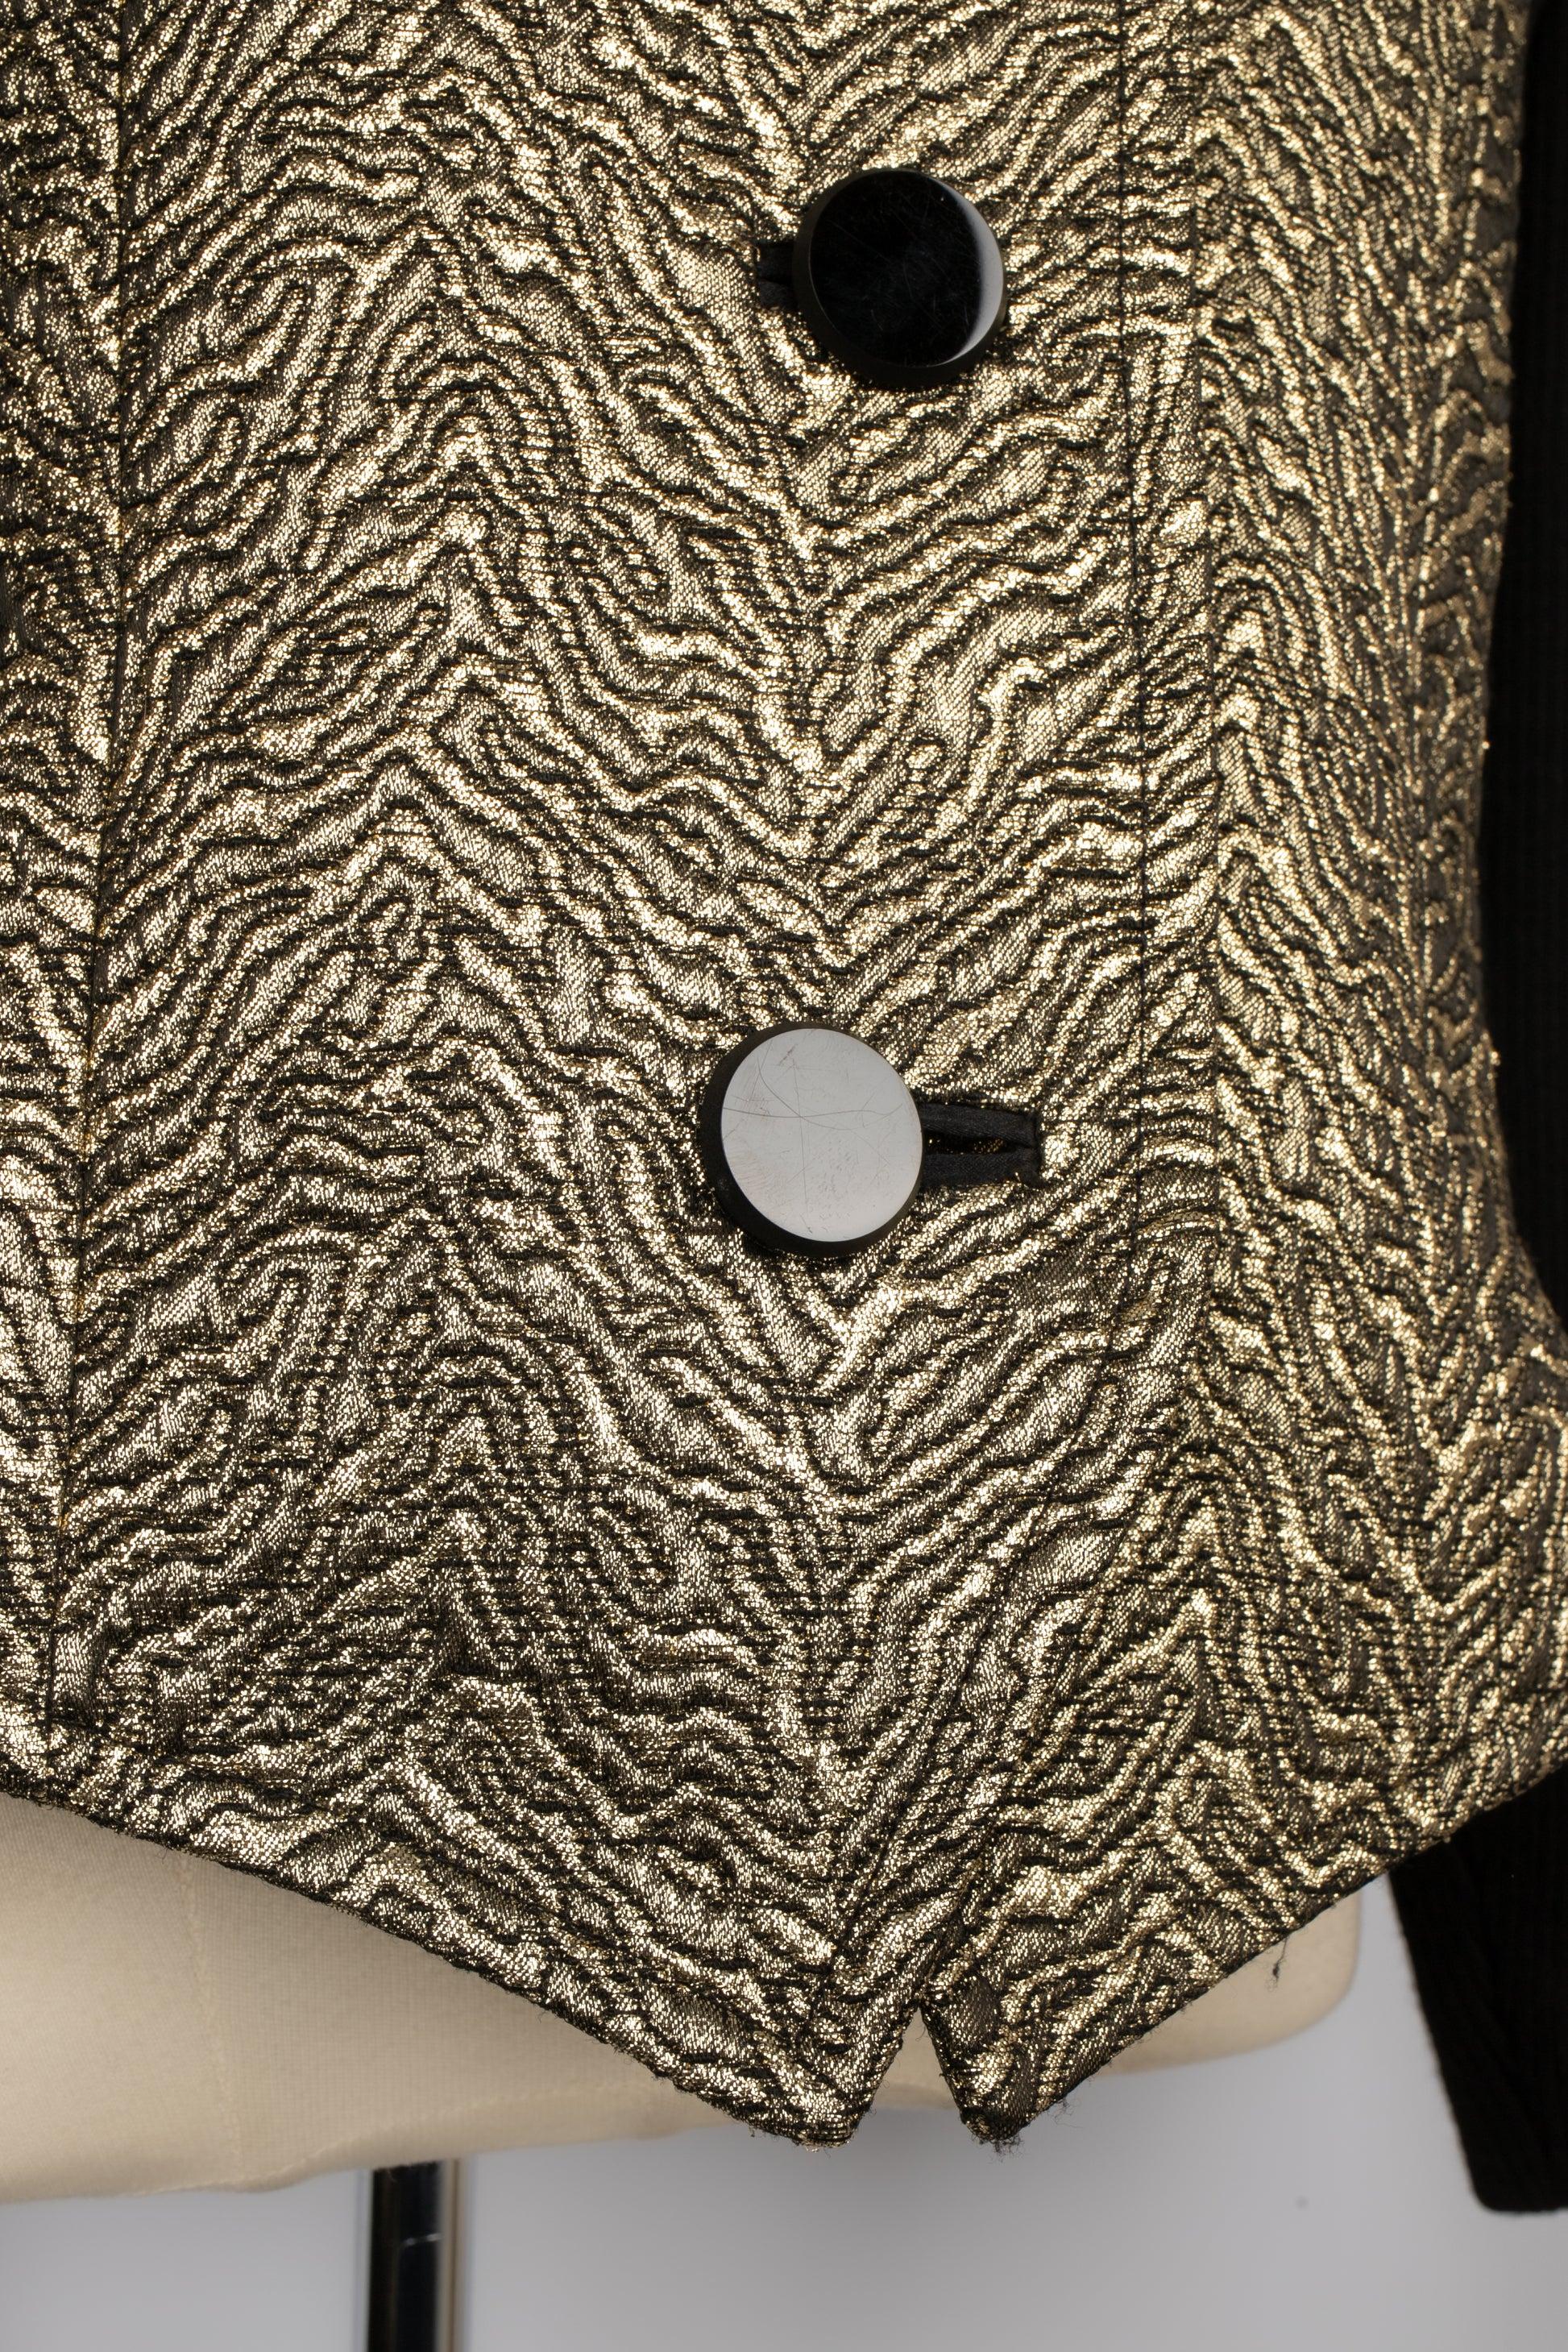 Veste en laine noire et lurex doré Yves Saint Laurent, années 1980 en vente 2